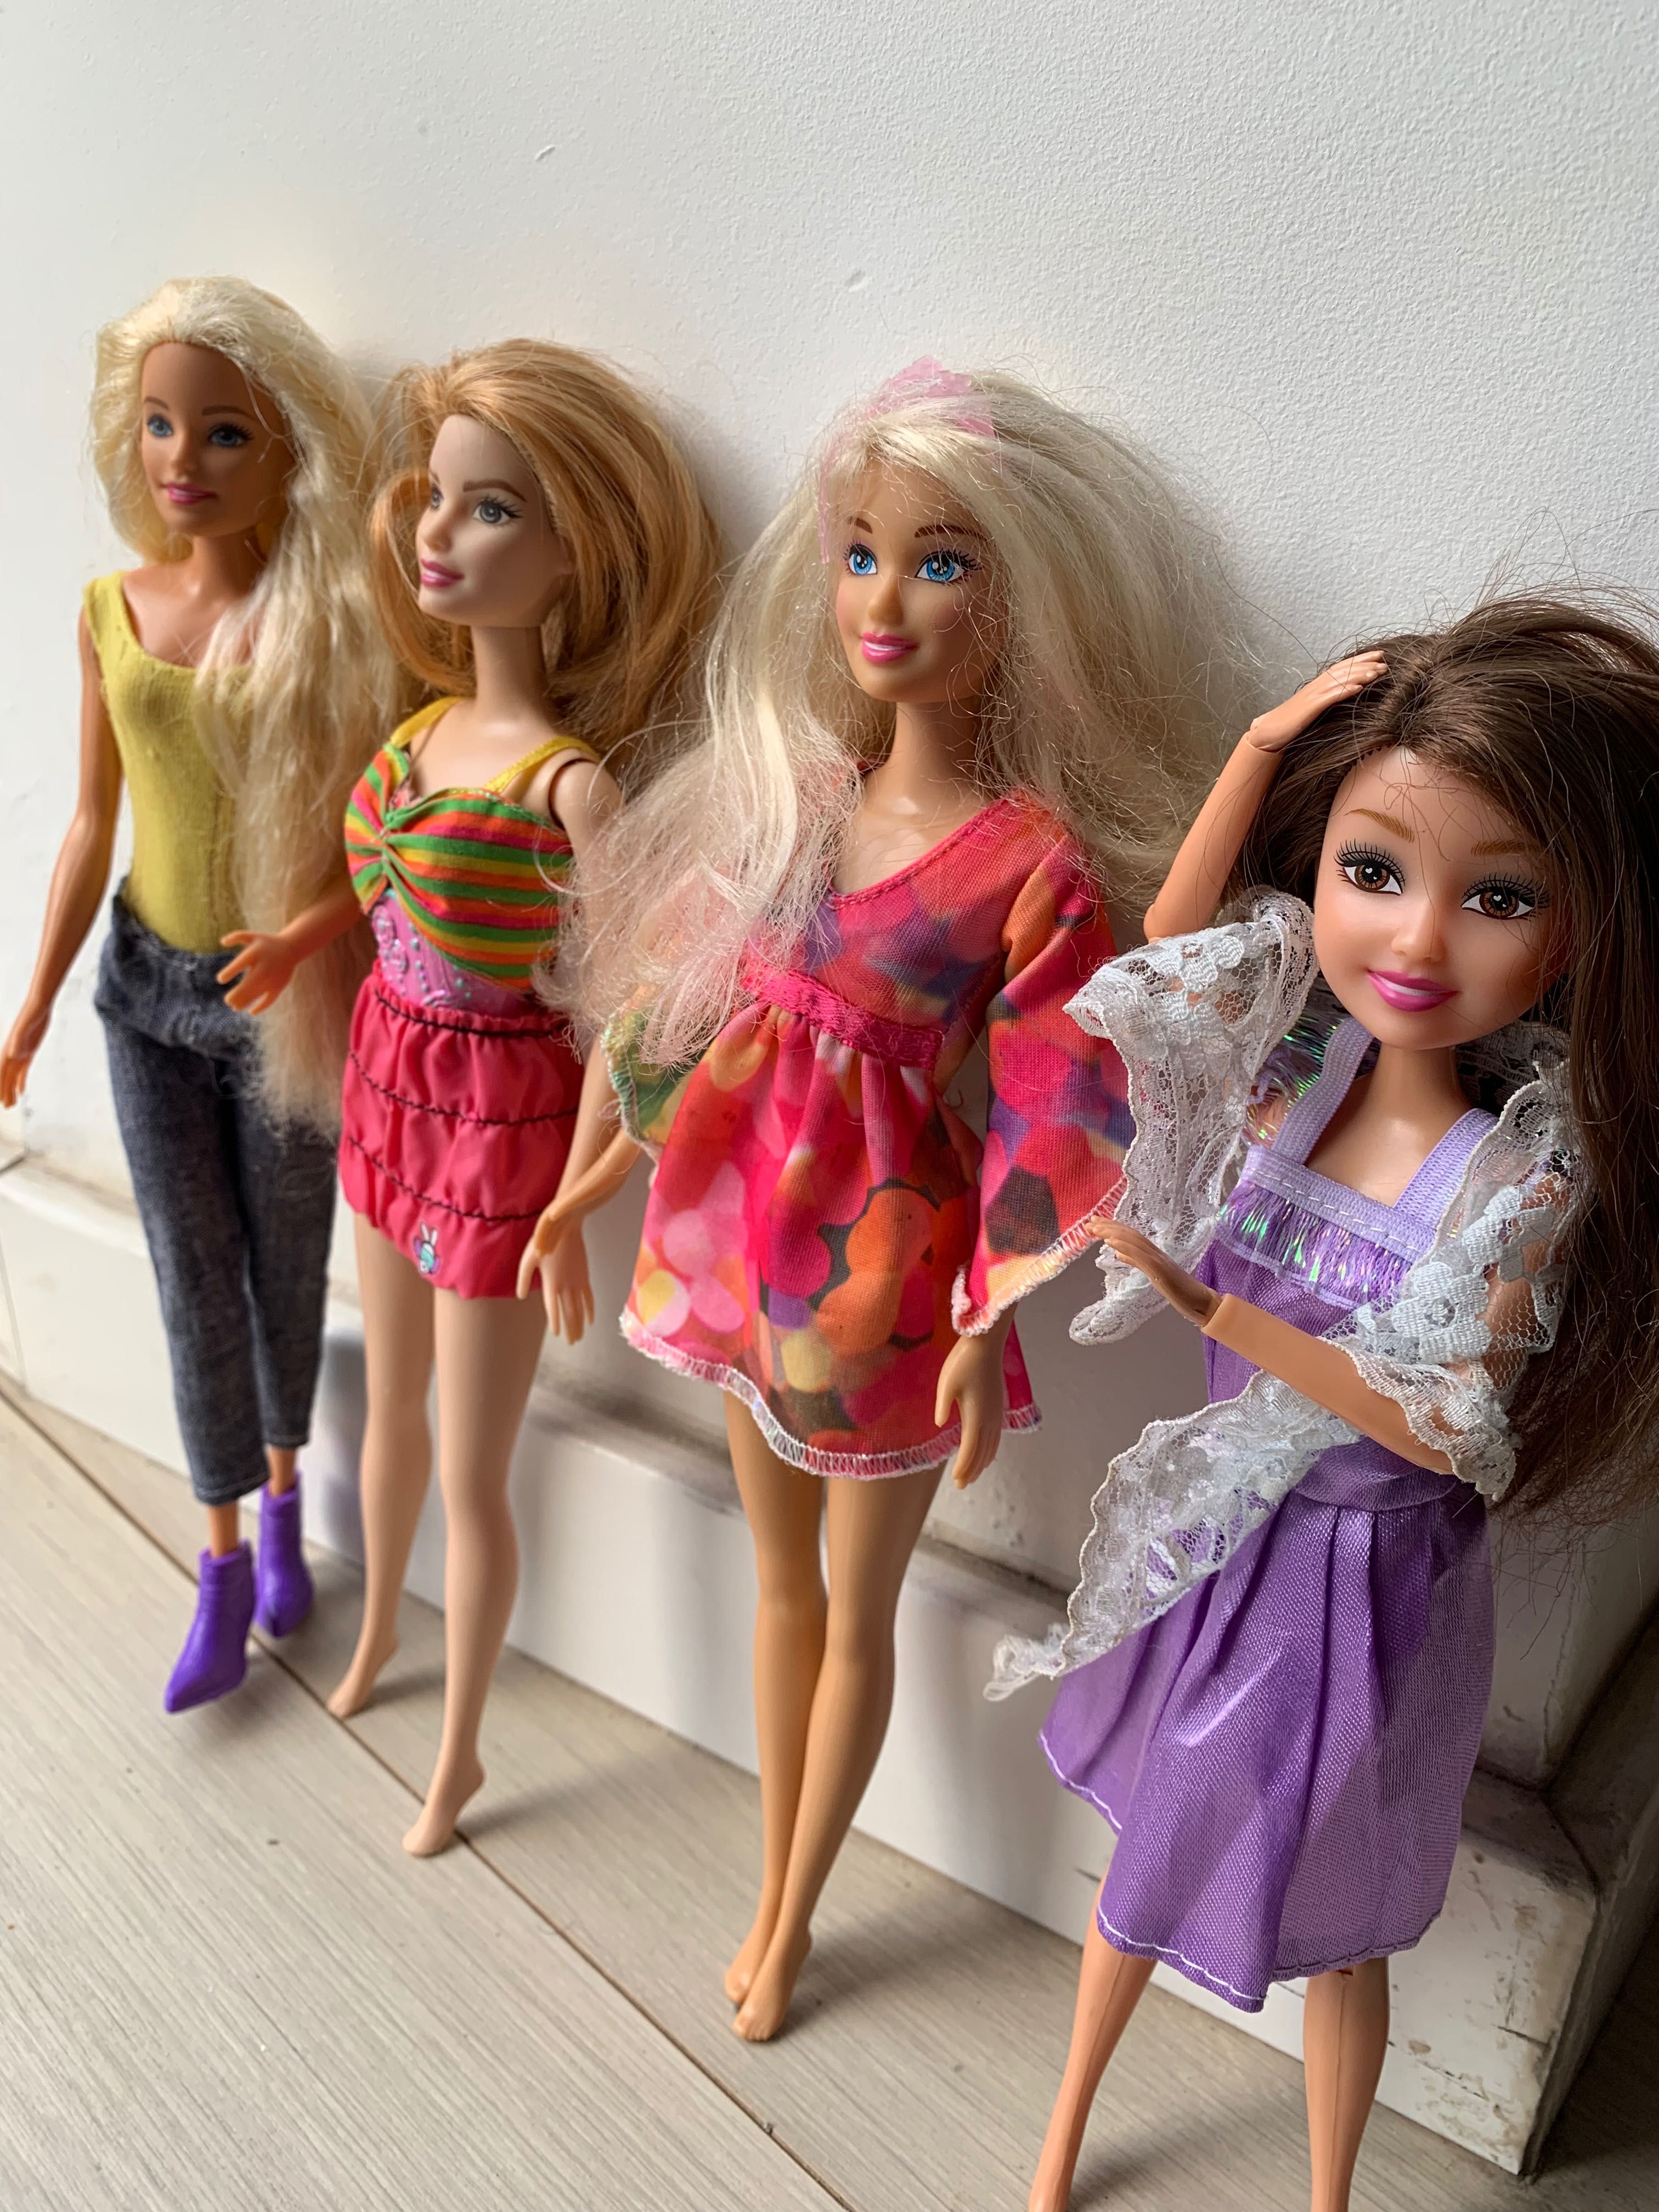 Bonecas Barbie’s Originais da Mattel